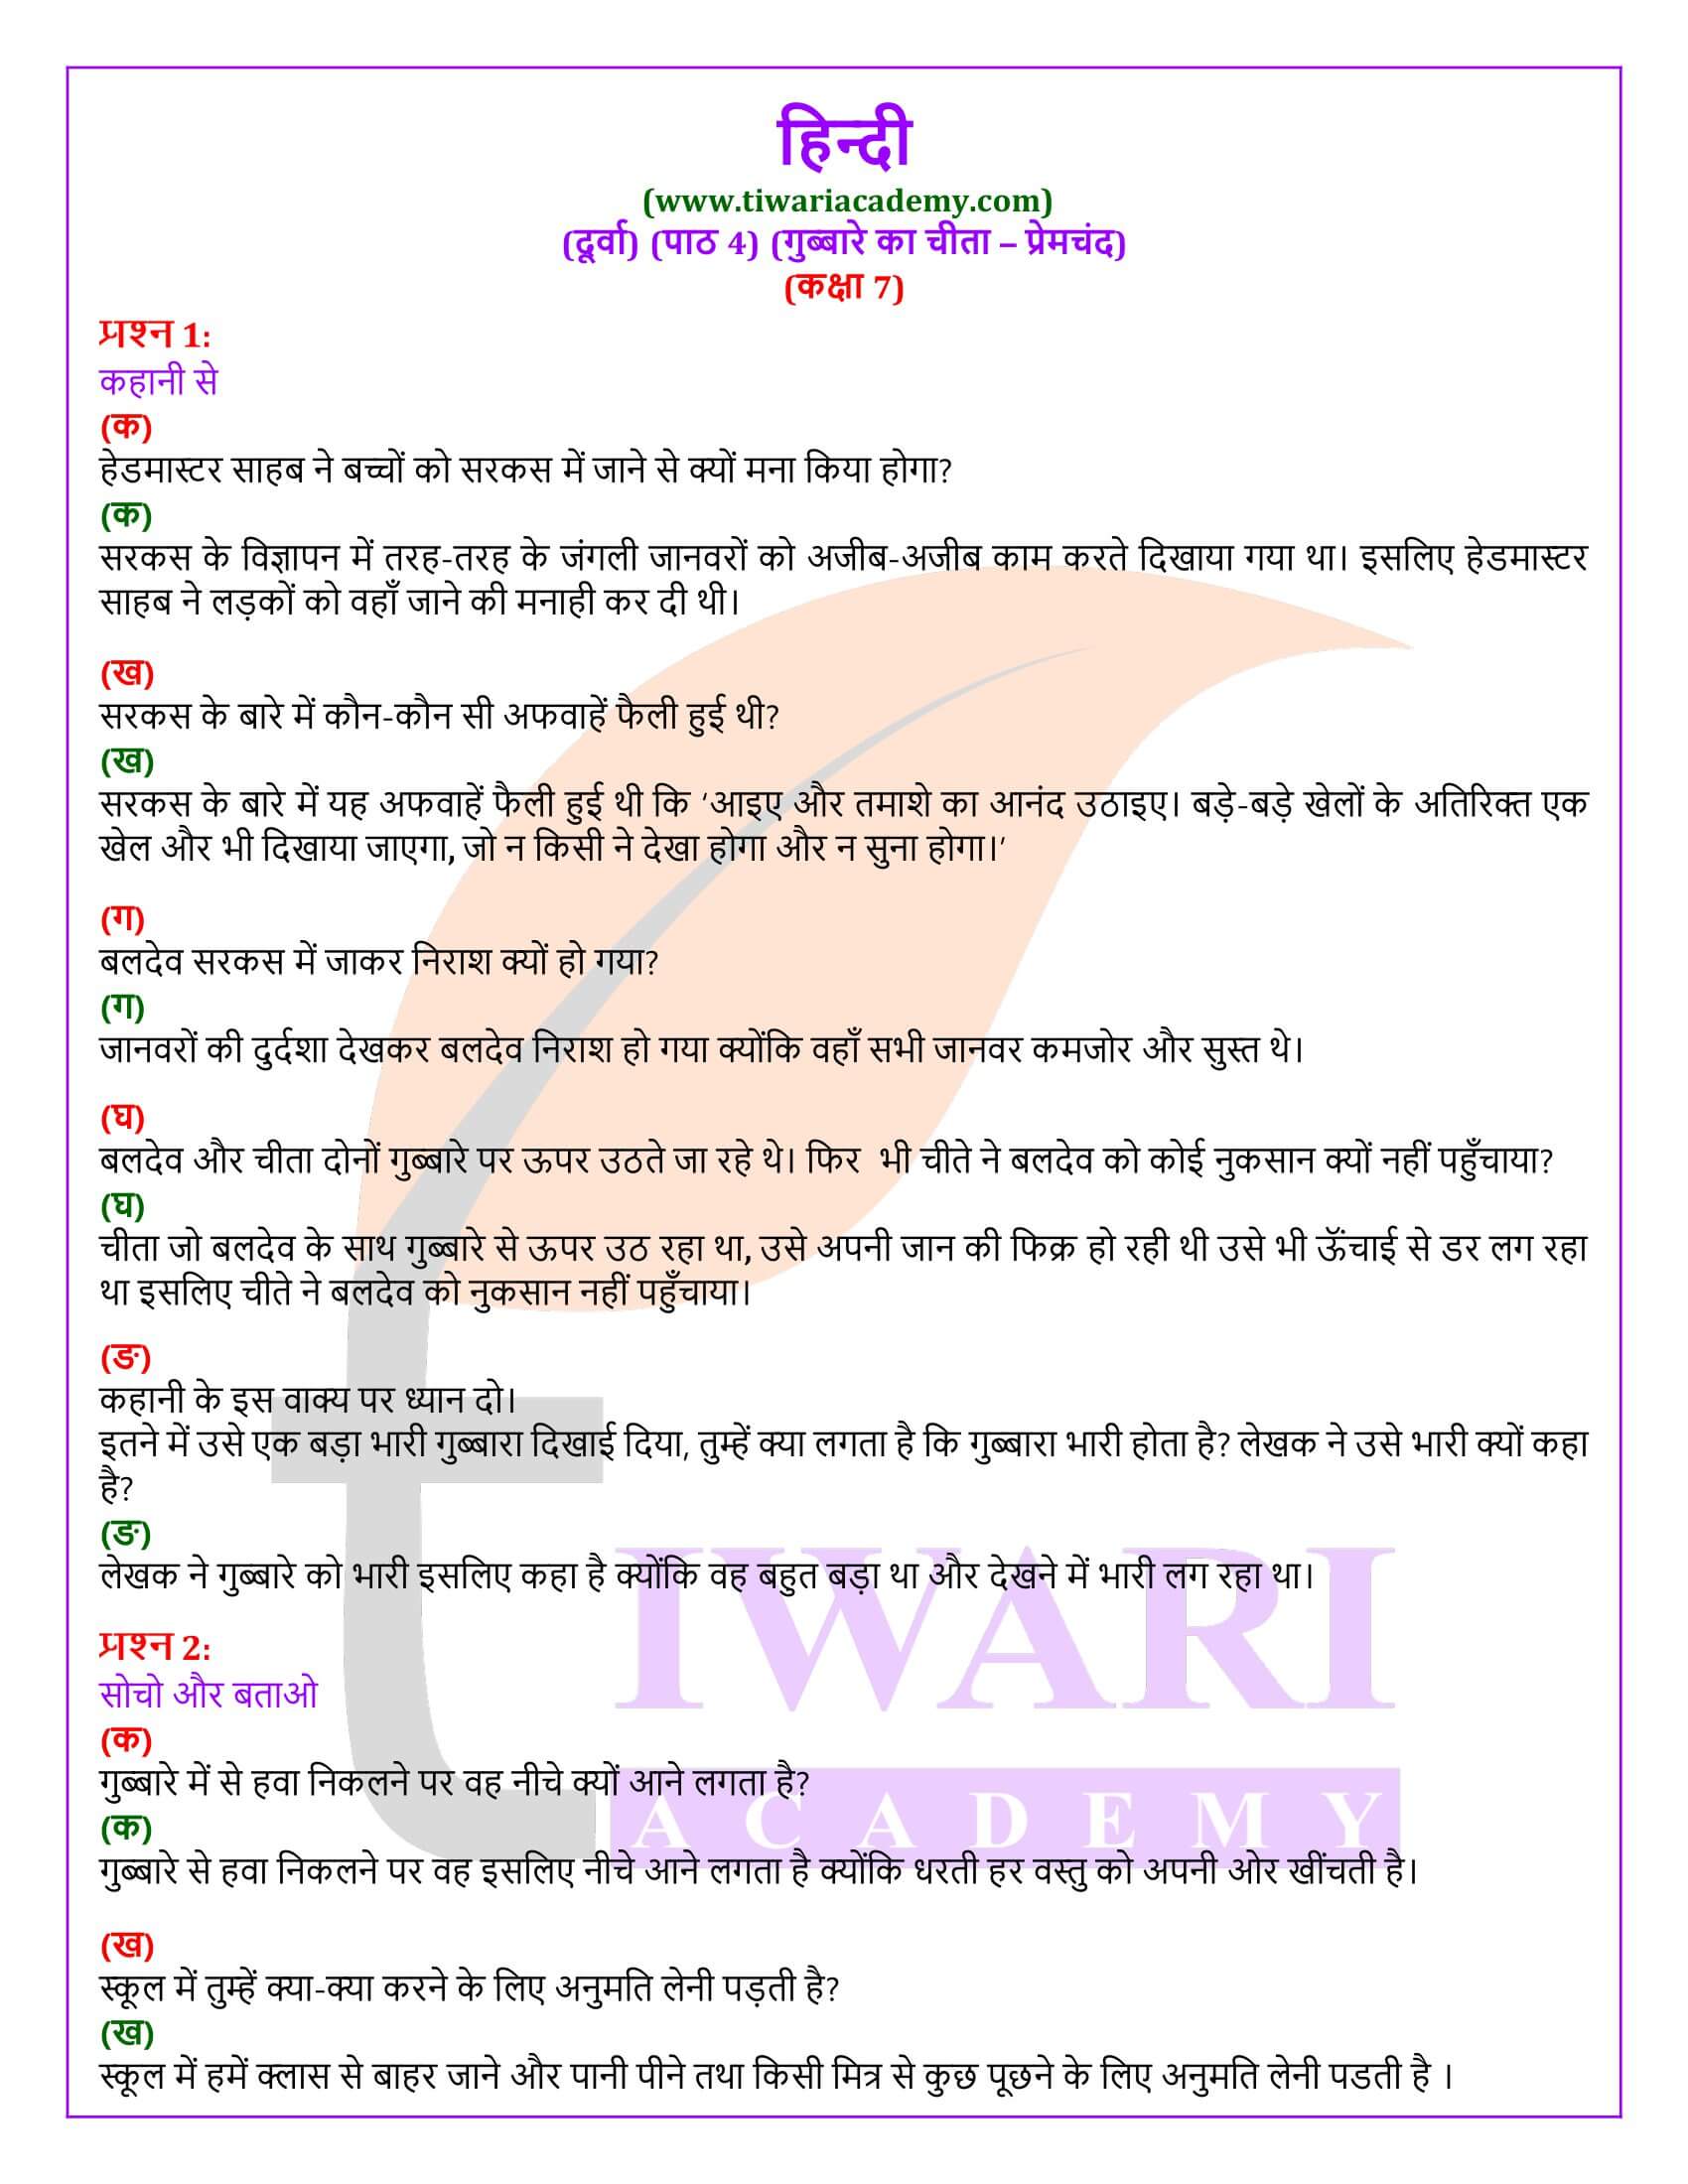 कक्षा 7 हिंदी दूर्वा अध्याय 4 गुब्बारे पर चीता के प्रश्न उत्तर